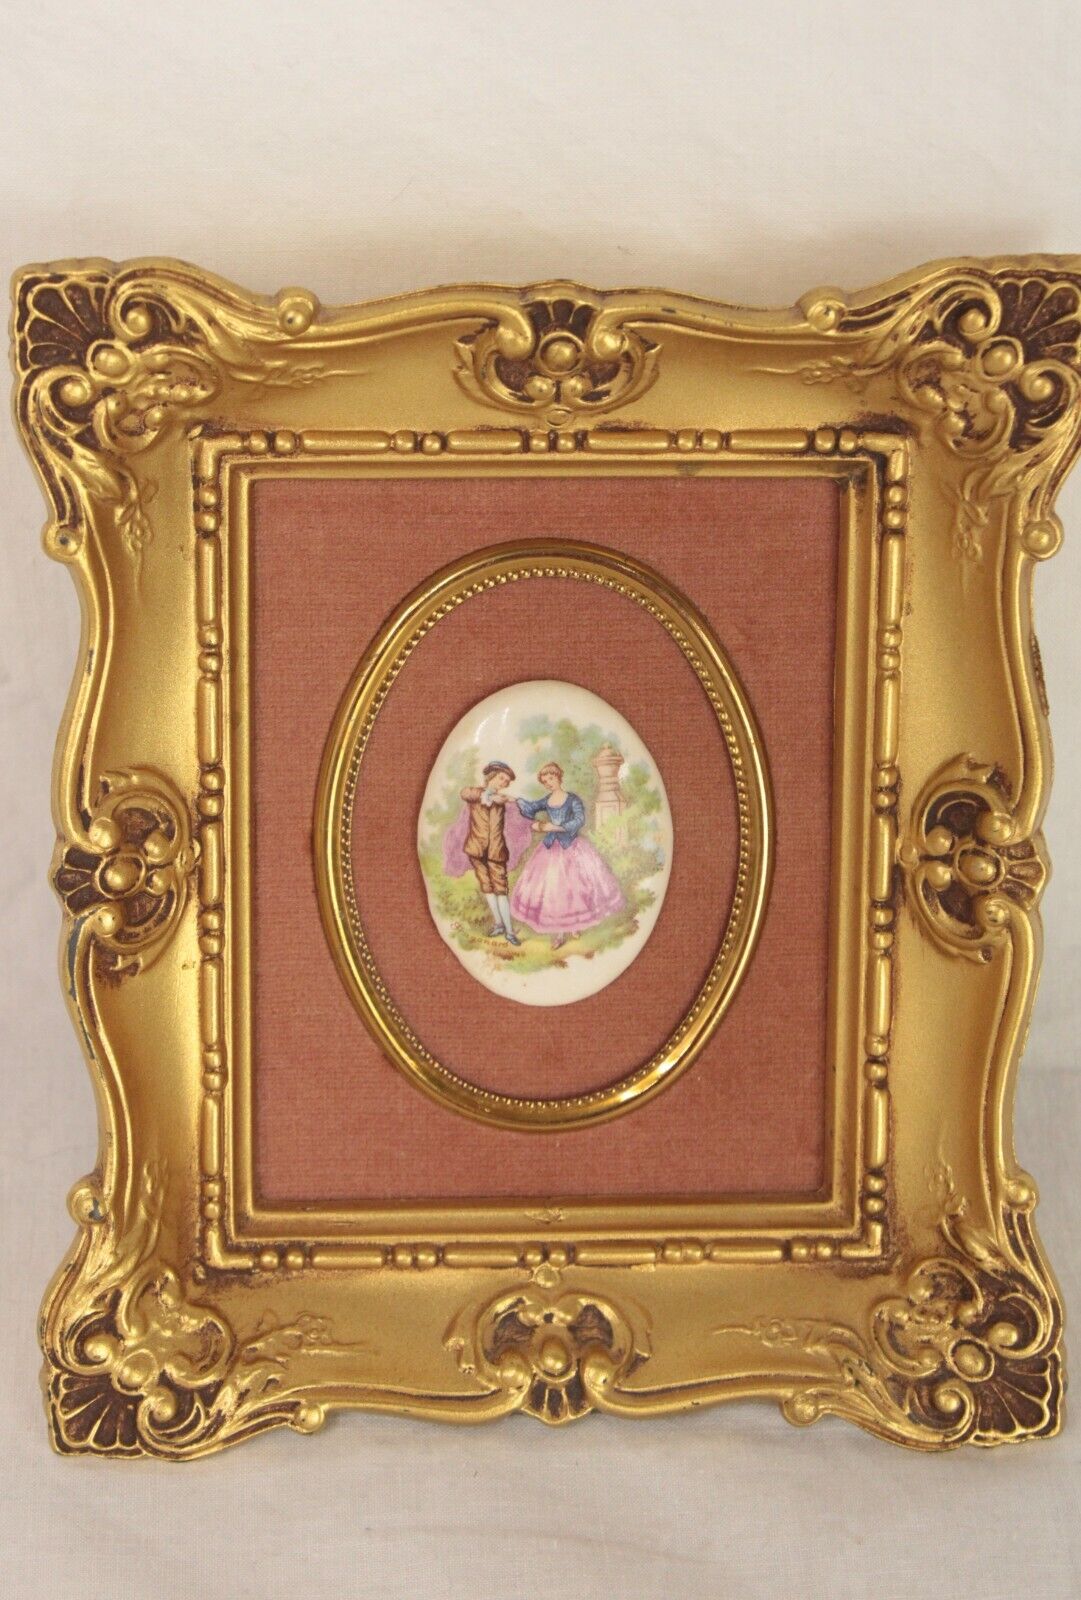 Vtg Fragonard Rococo Cameo Ornate Gold Tone Frame Picture velvet Wall Art Italy